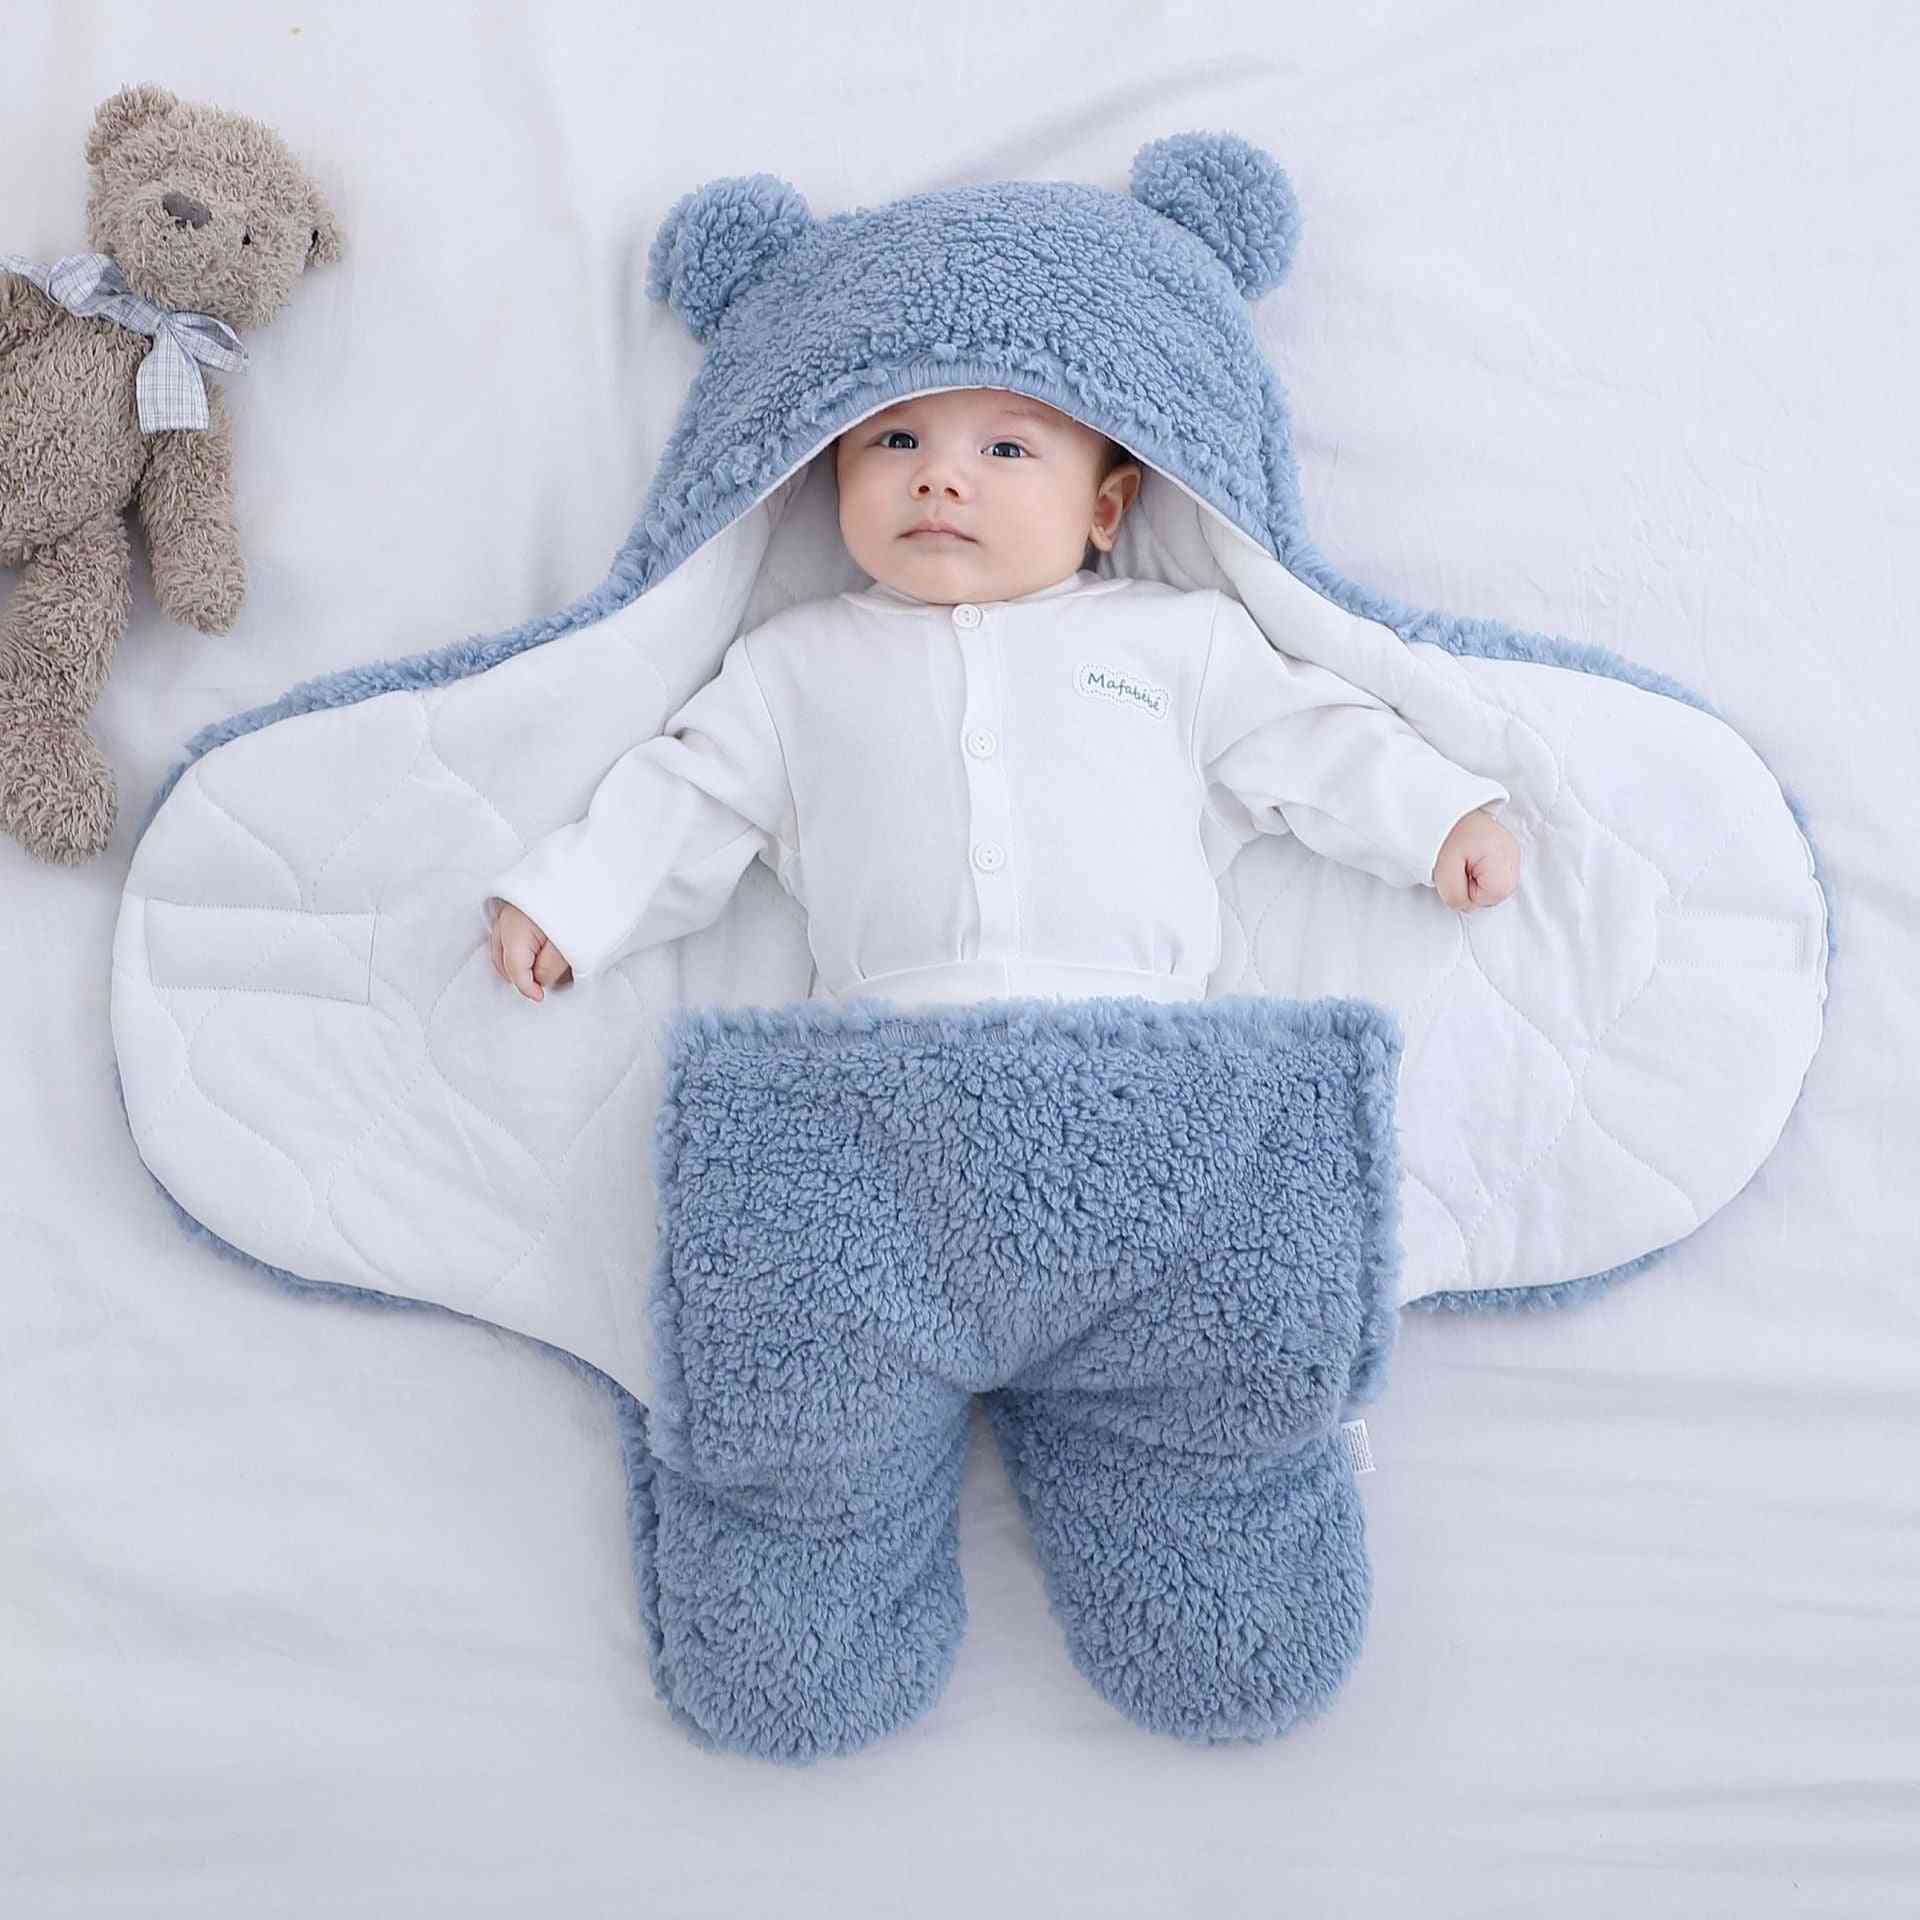 Babyschlafsack ultraweiche flauschige Fleece Neugeborene Empfangsdecke, Babykleidung schlafend Kinderzimmer Wickelwickel